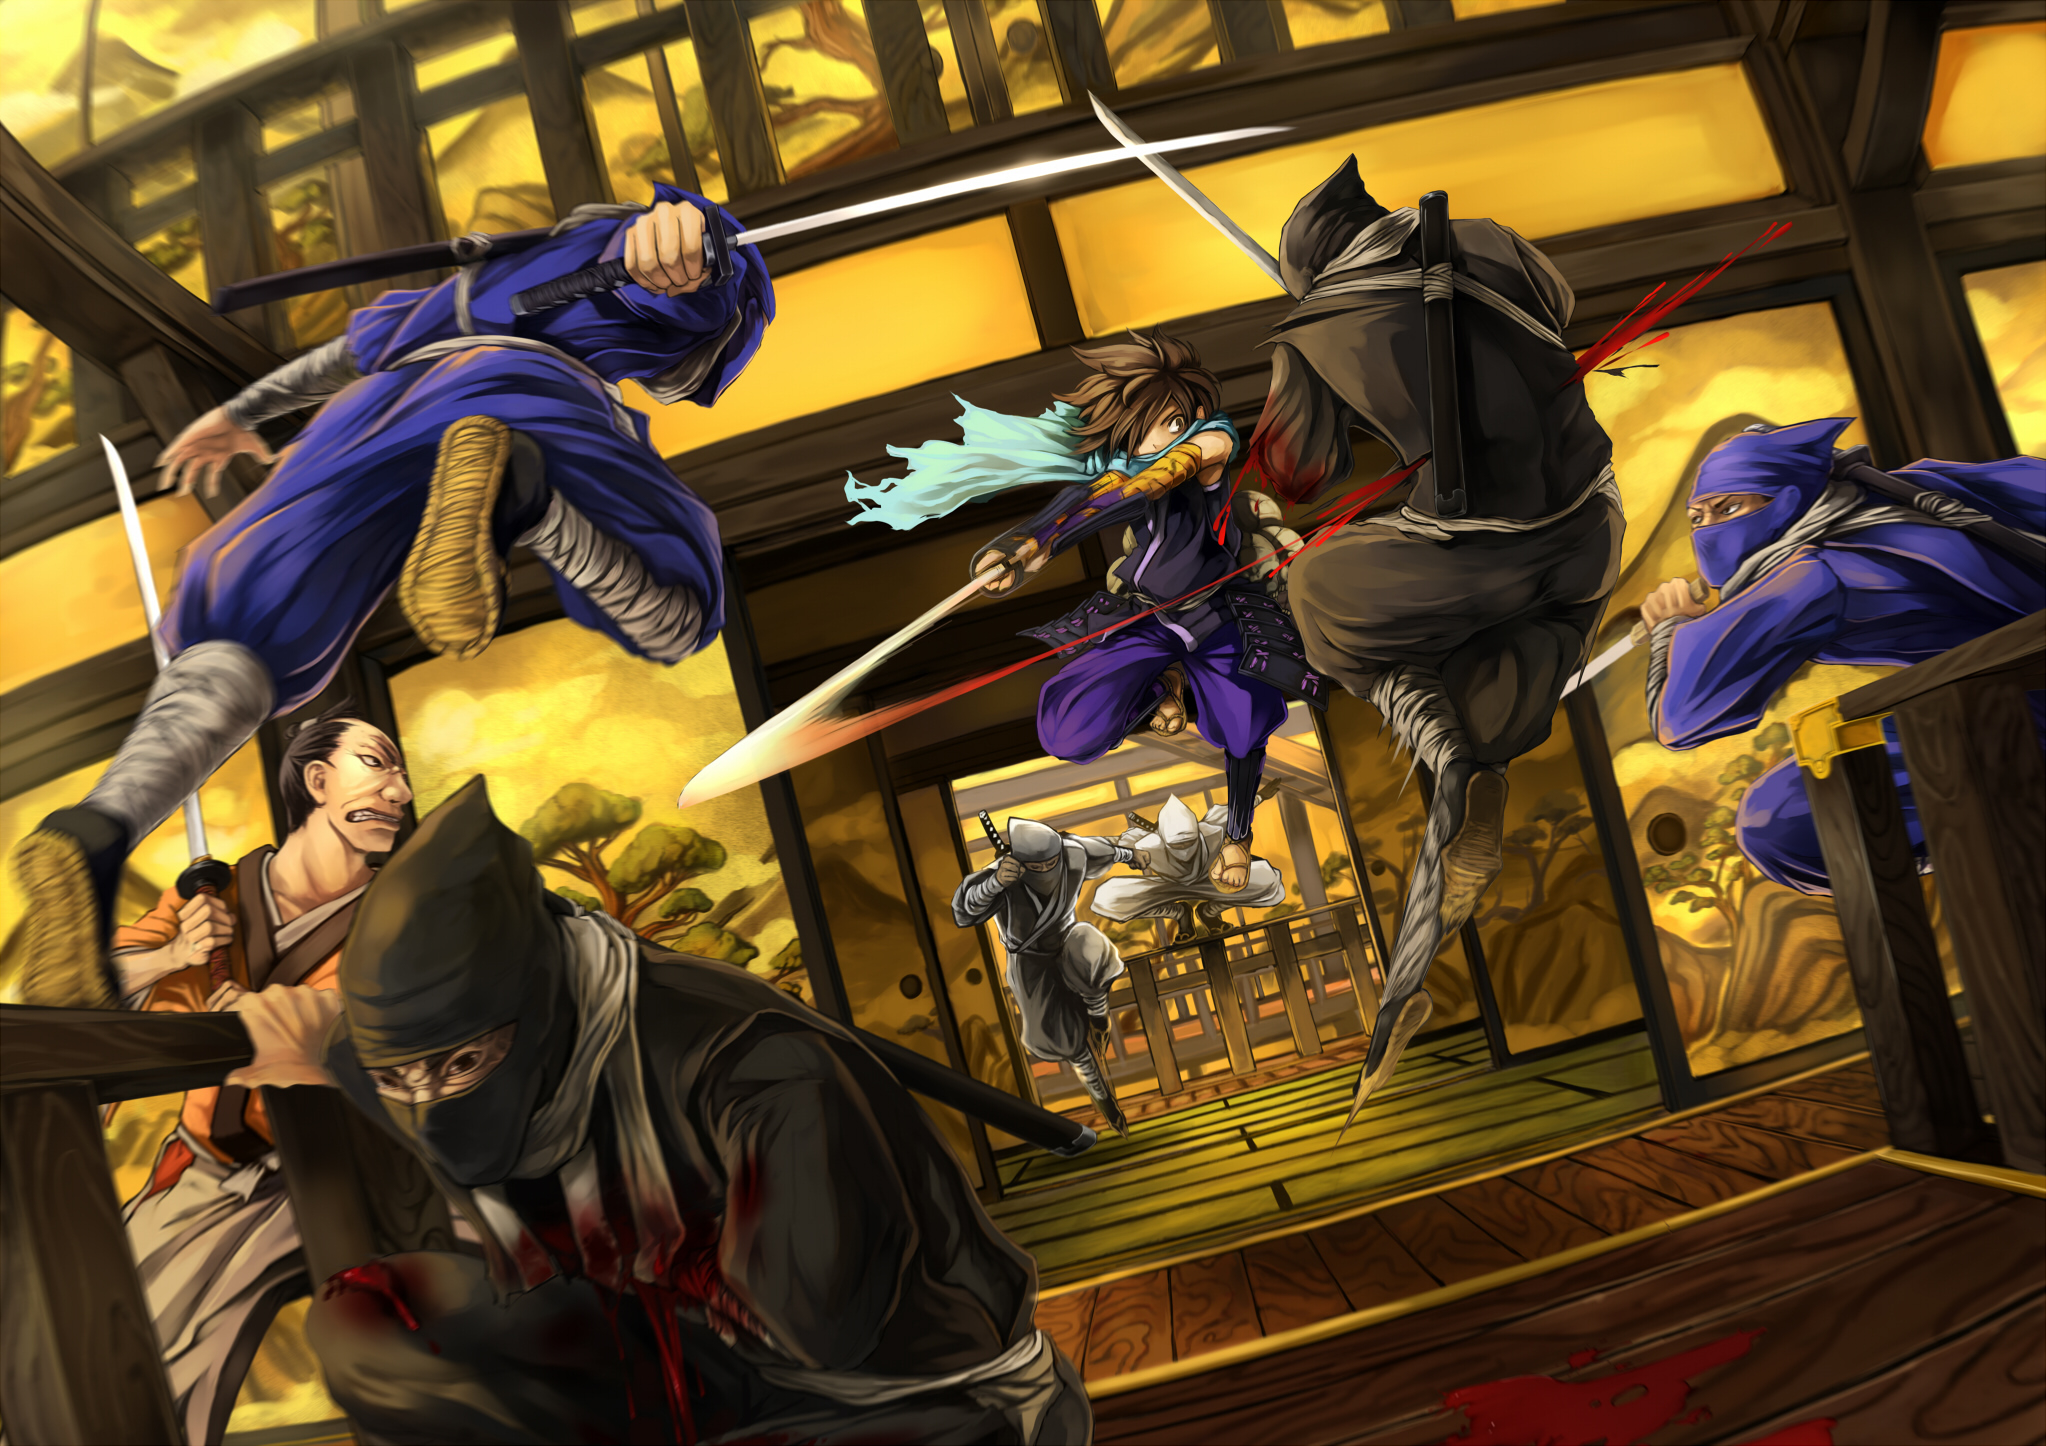 2046x1446 Oboro-muramasa muramasa kisuke visualcat katana sword battles war weapons ninja wallpaper | | 23266